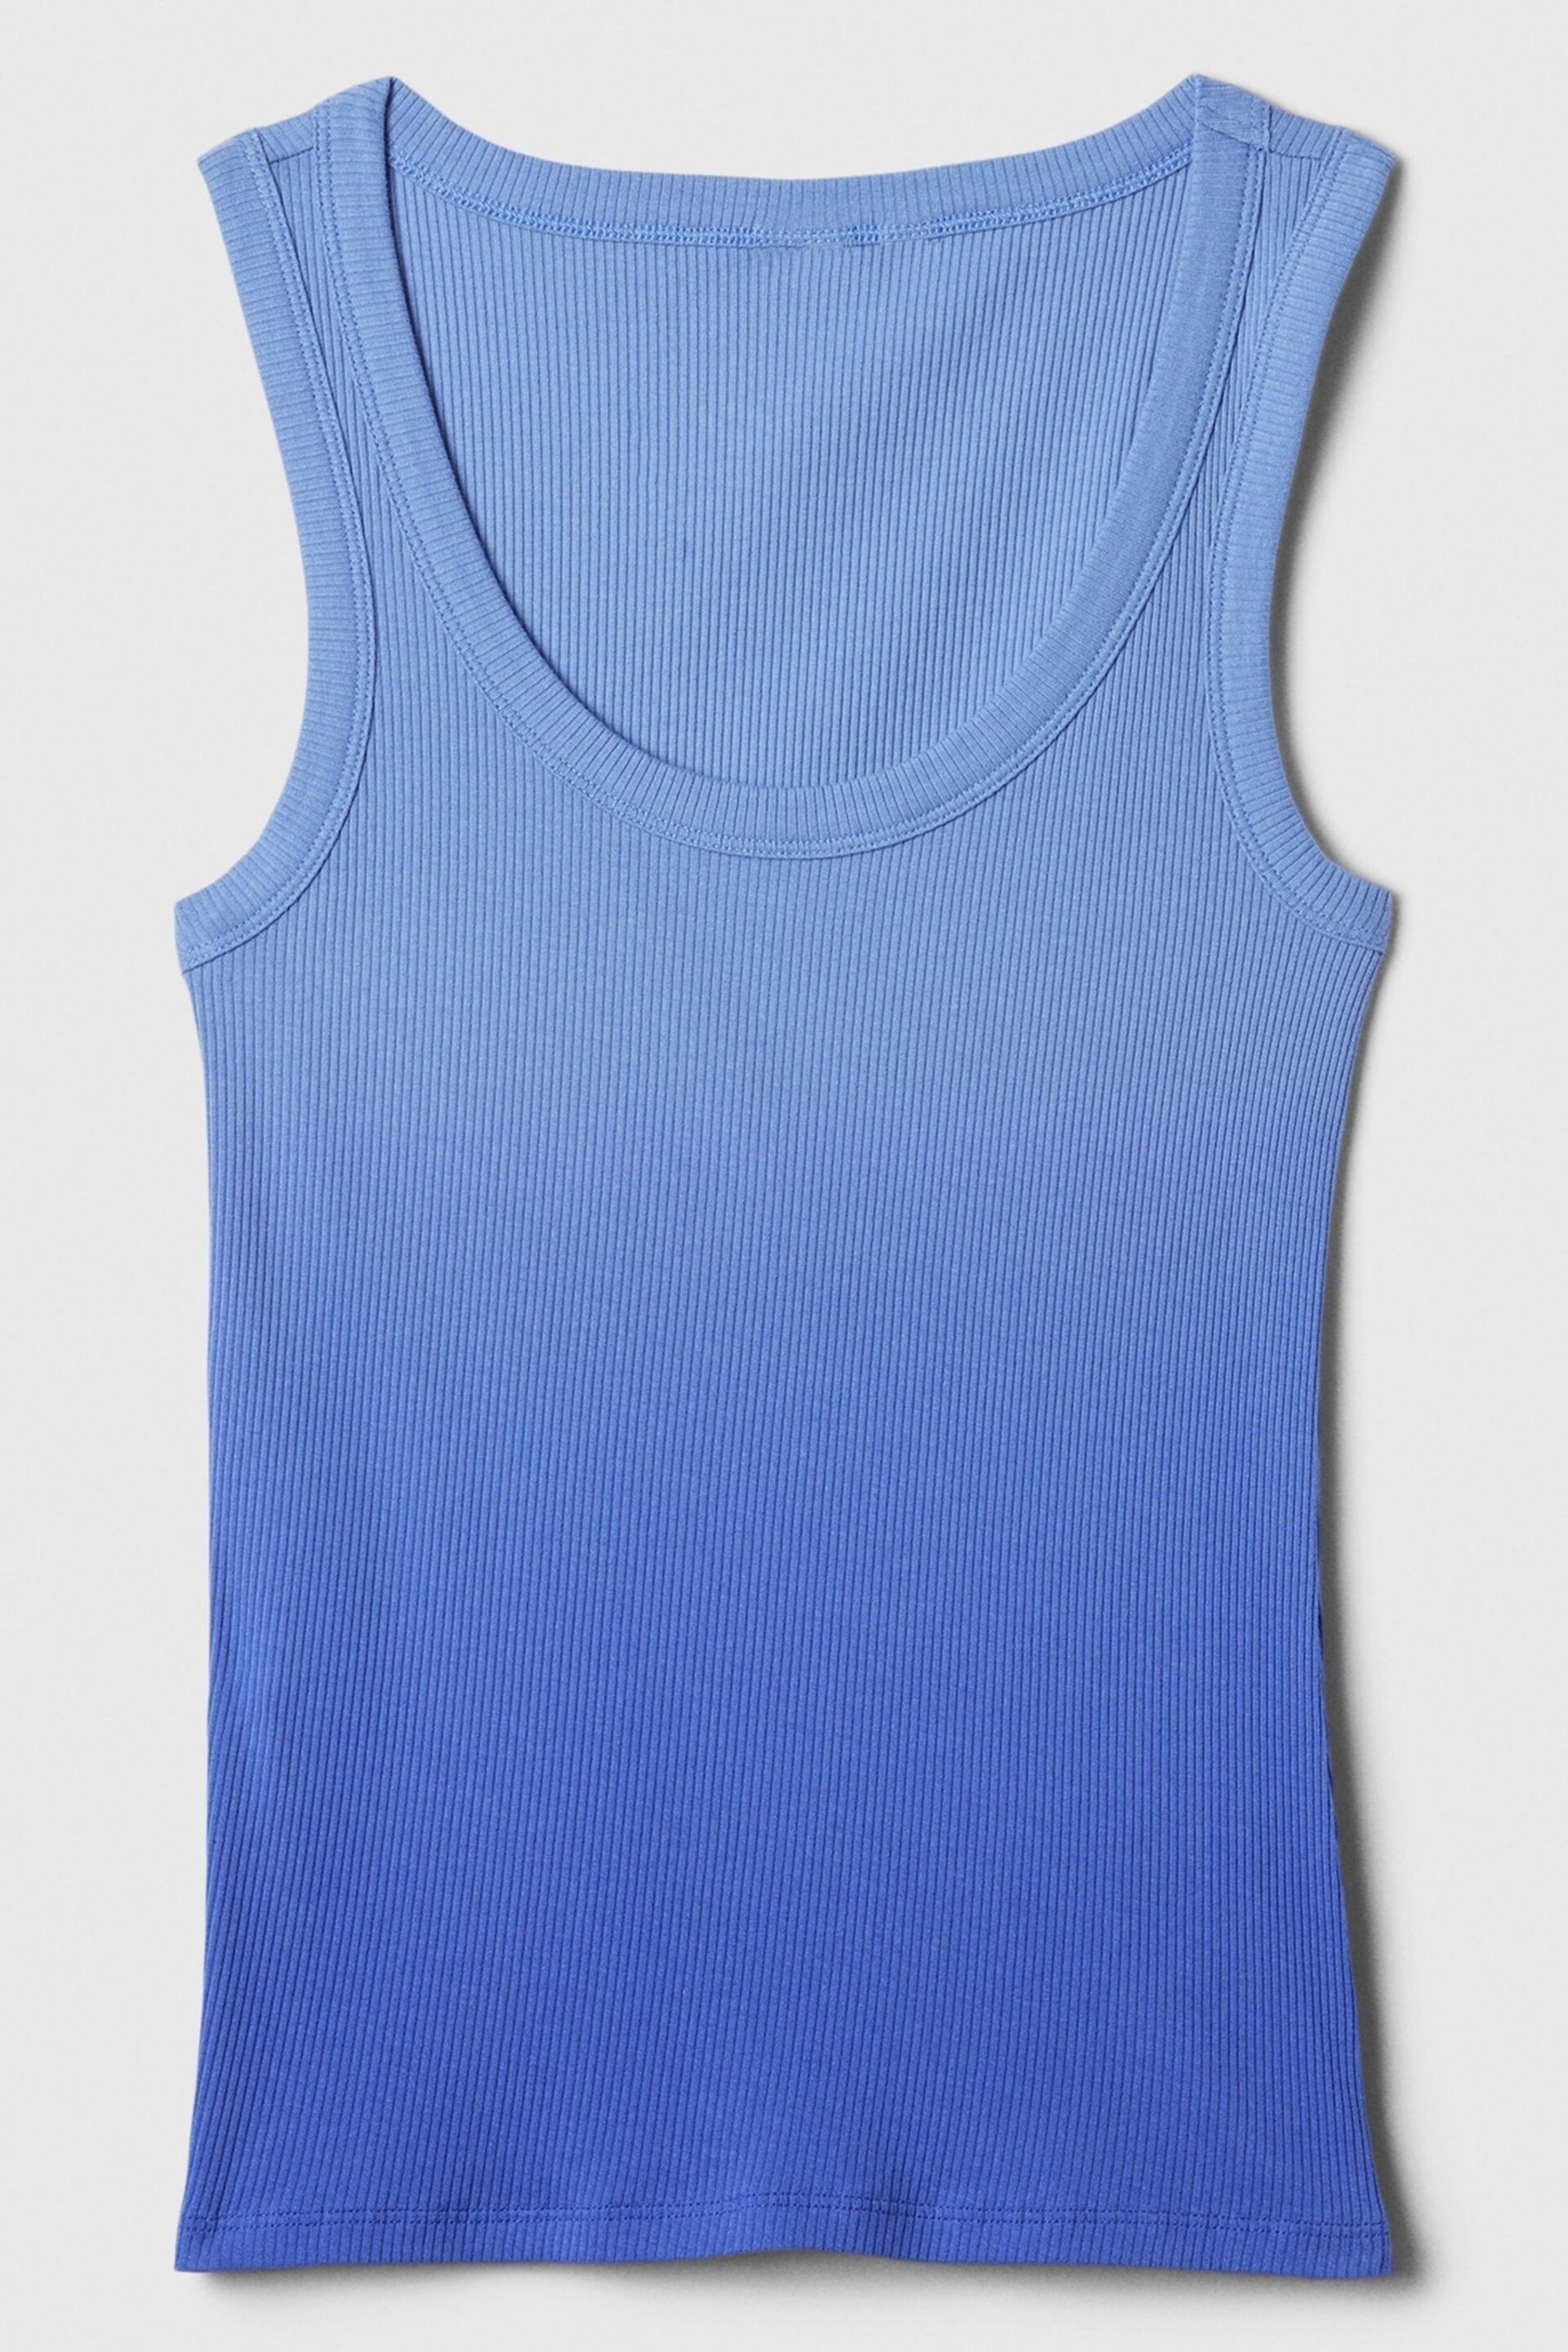 Gap Blue Soft Ribbed Vest Top - Image 5 of 5